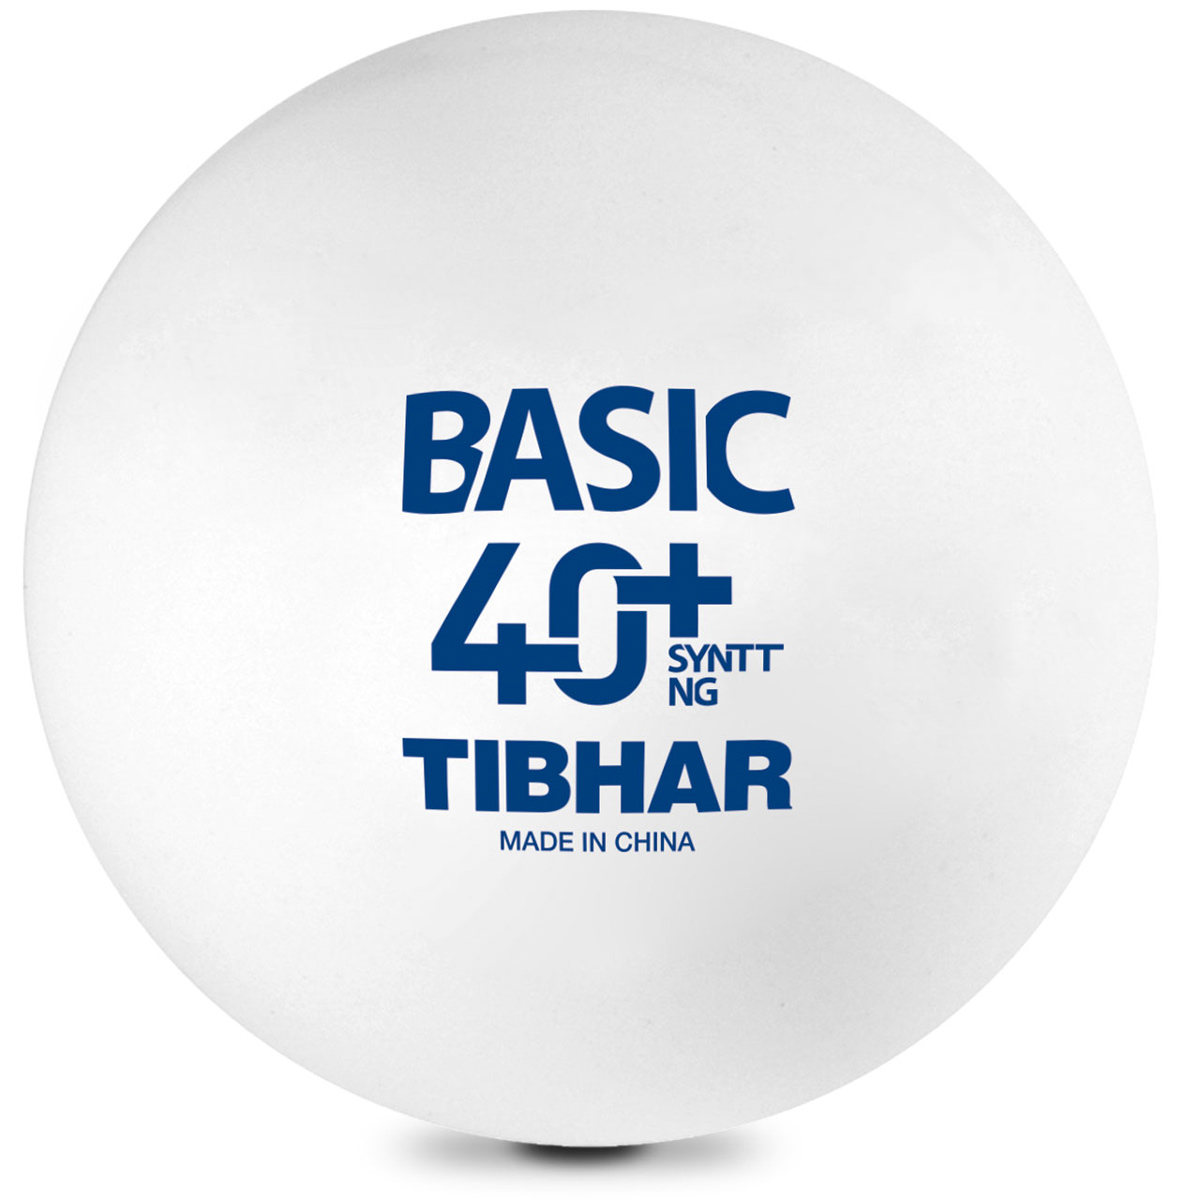 TIBHAR Ball Basic 40+ SYNTT NG 6er weiß